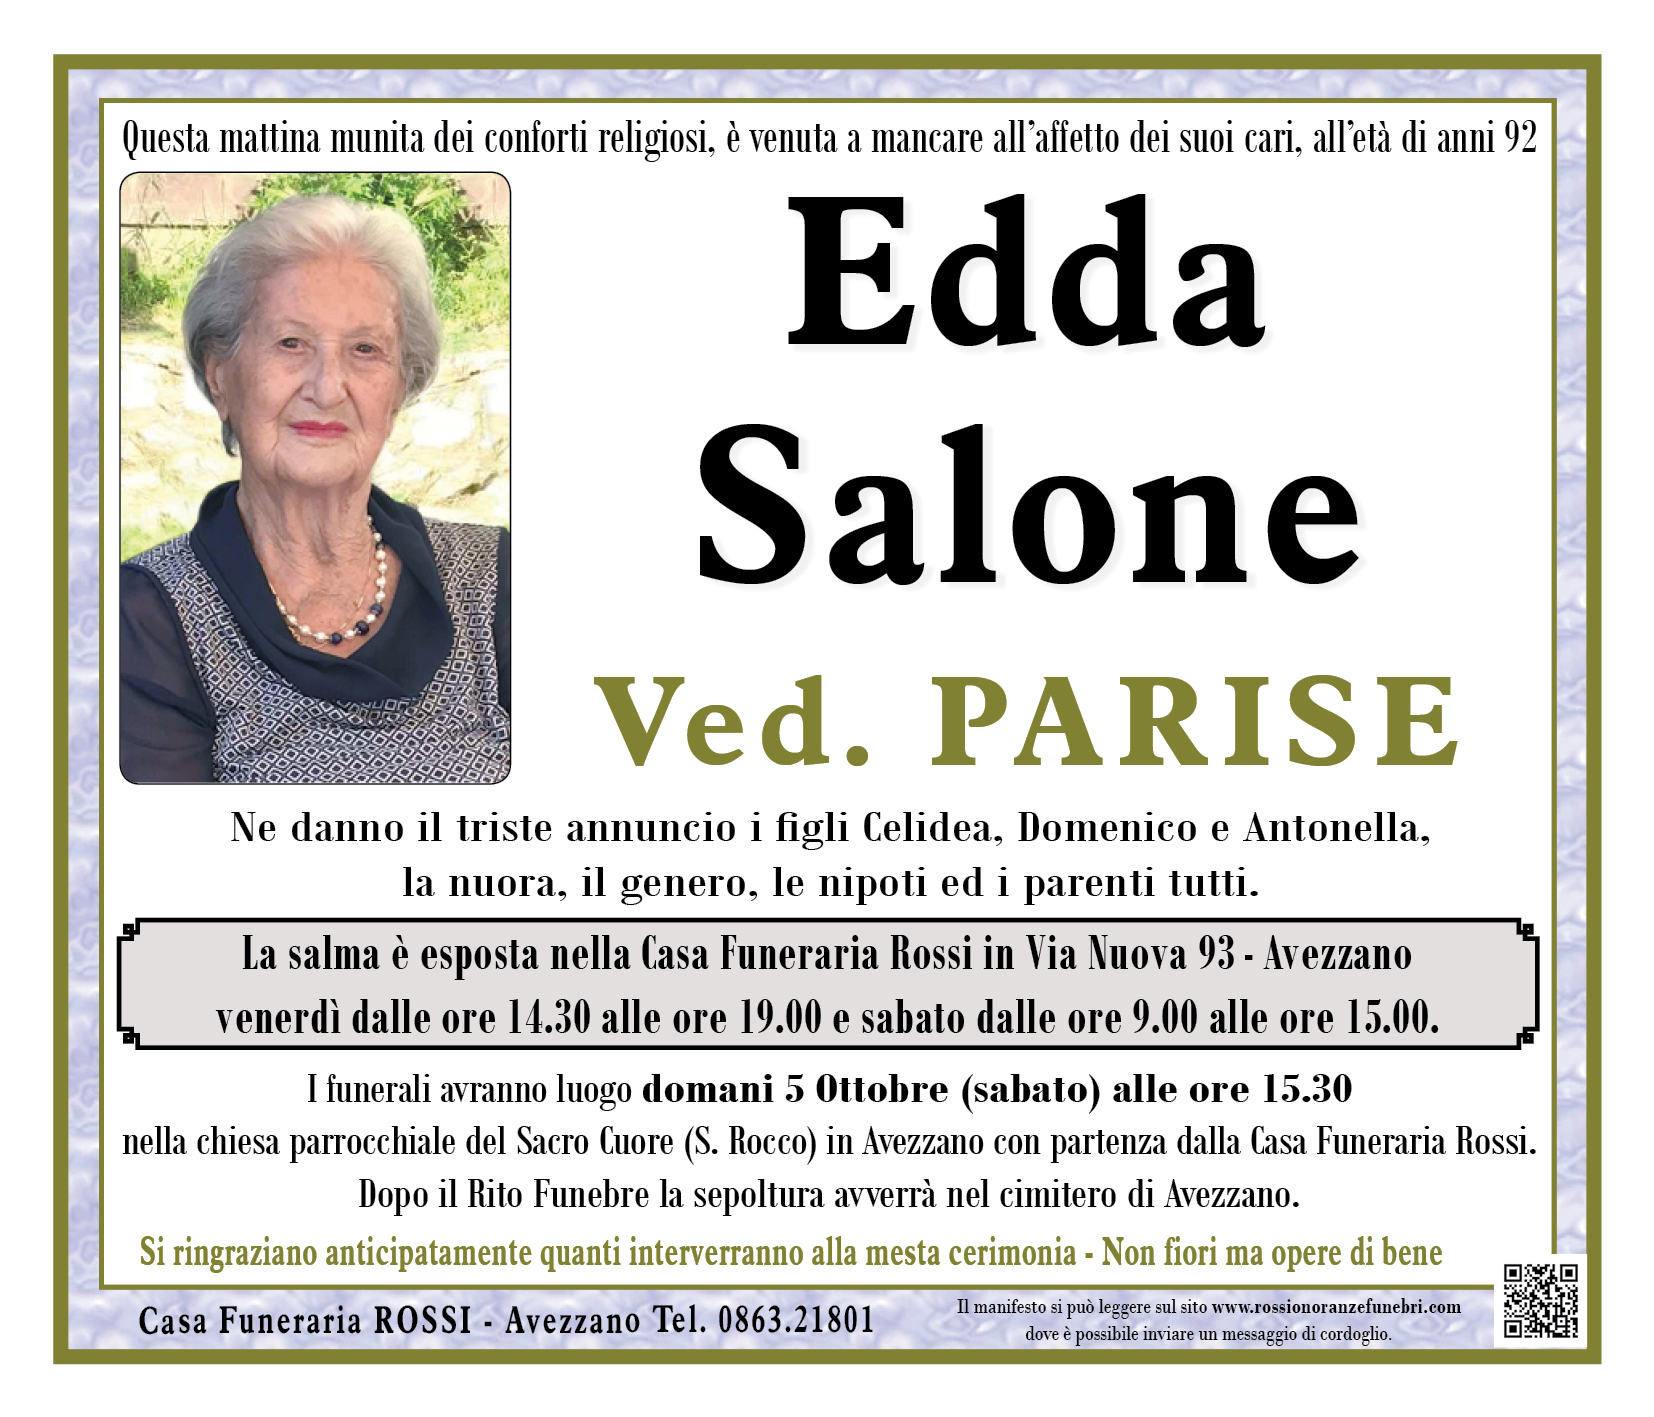 Edda Salone